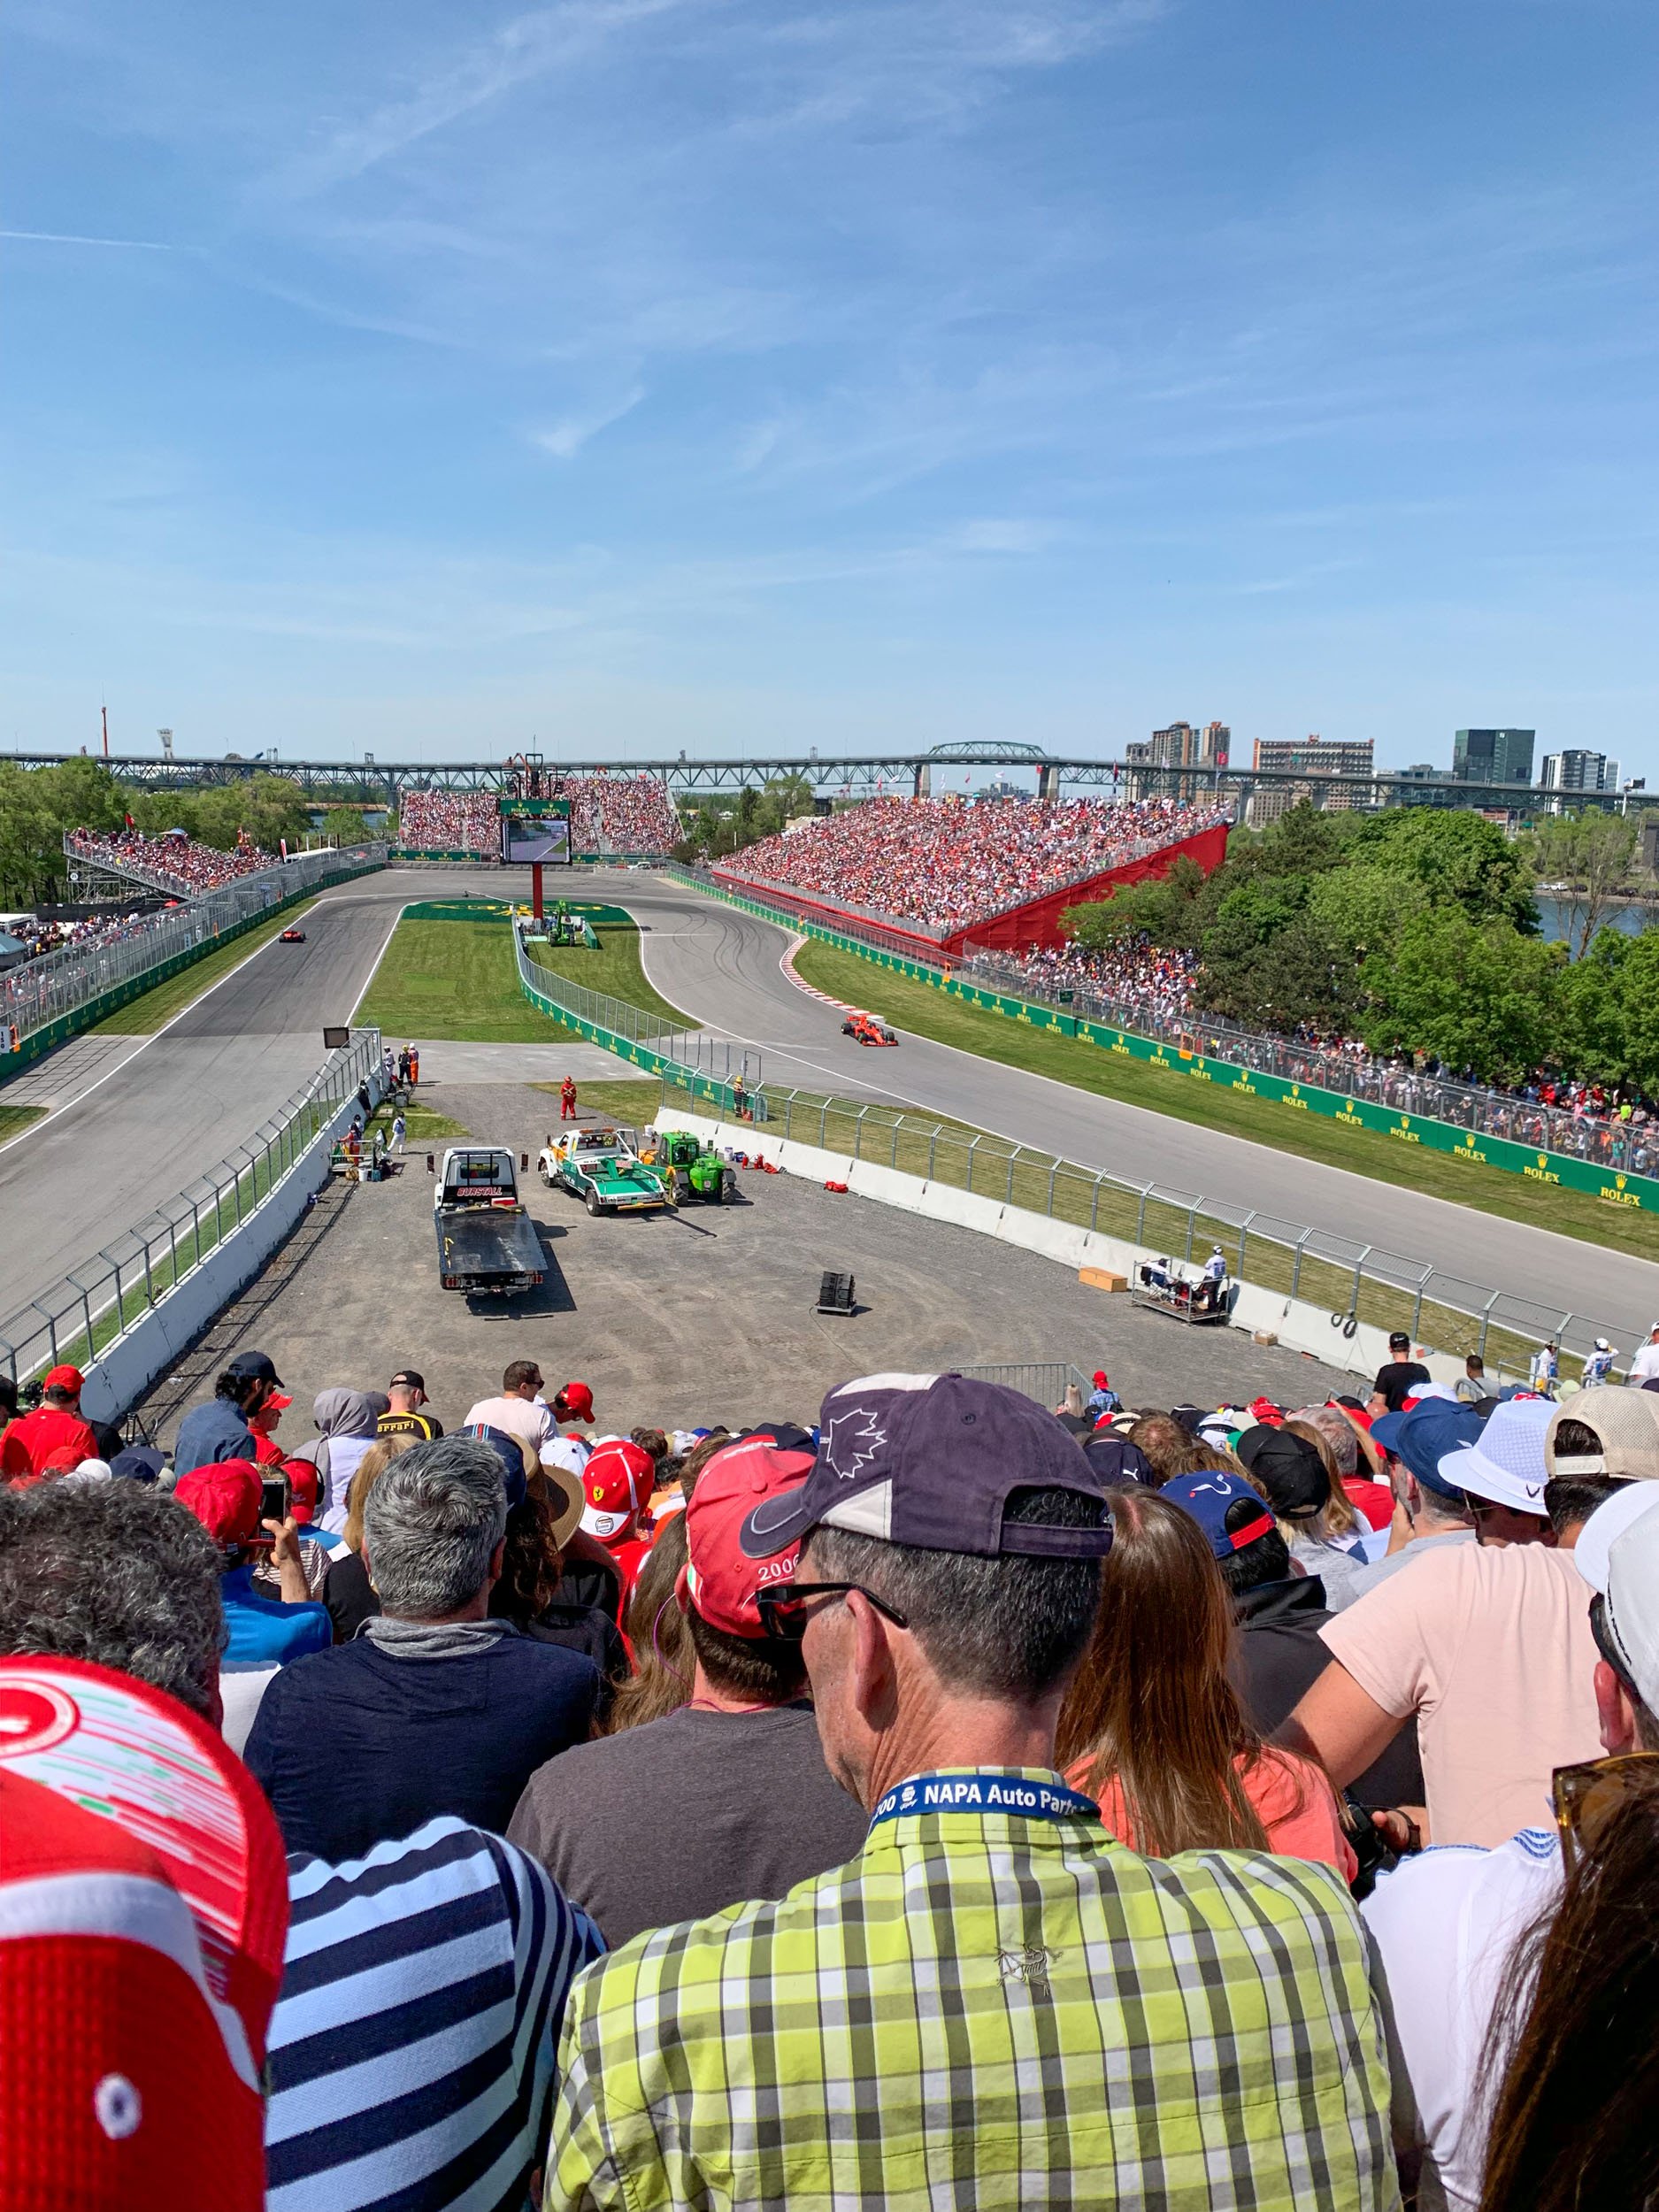 Sebastian Vettel leads the Canadian Grand Prix in Montreal for Ferrari